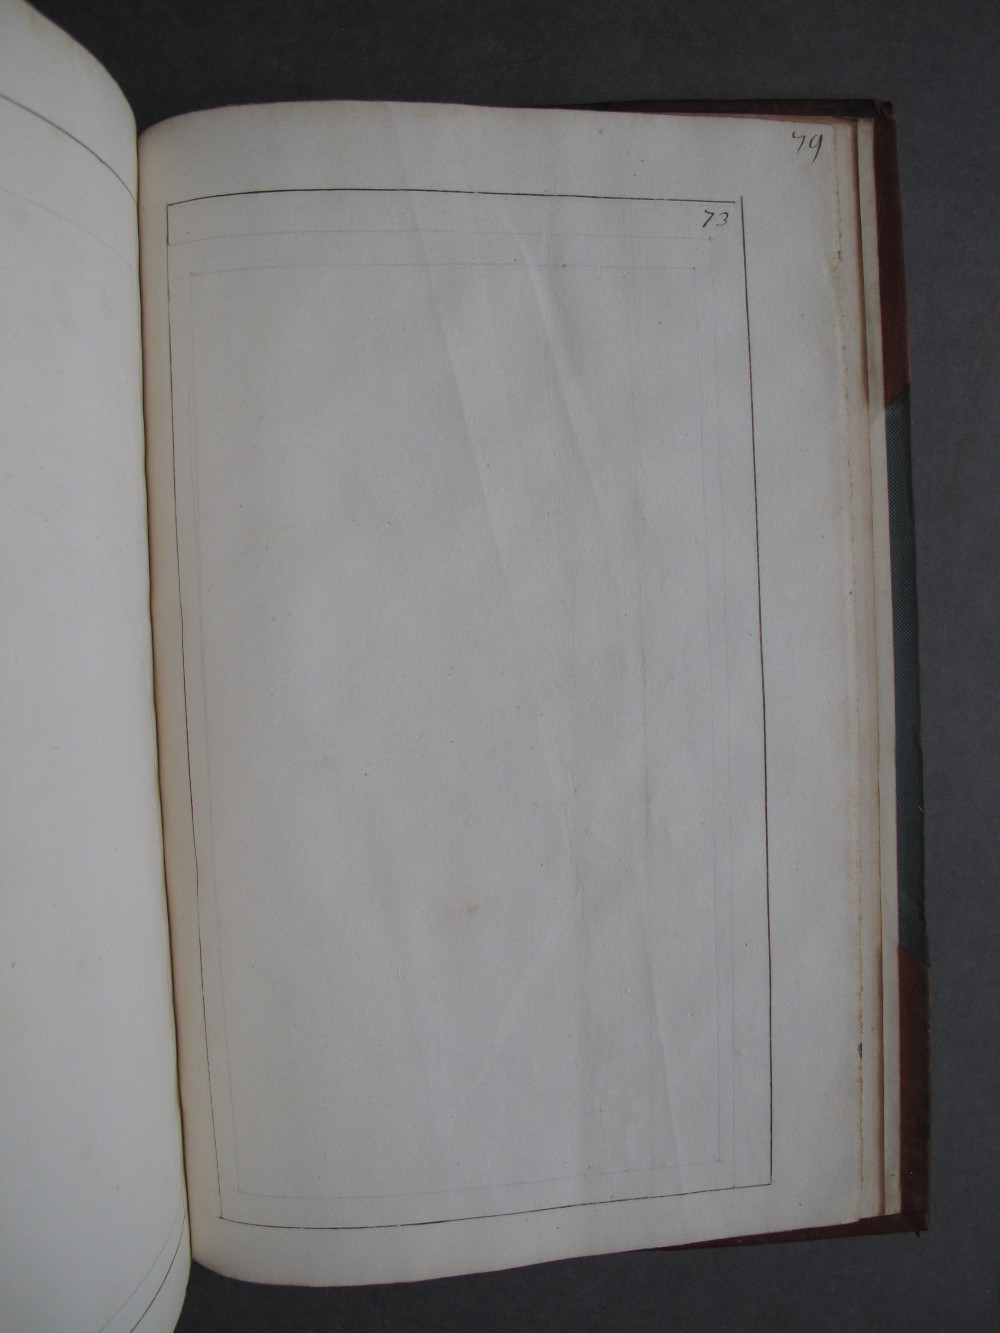 Folio 73 recto